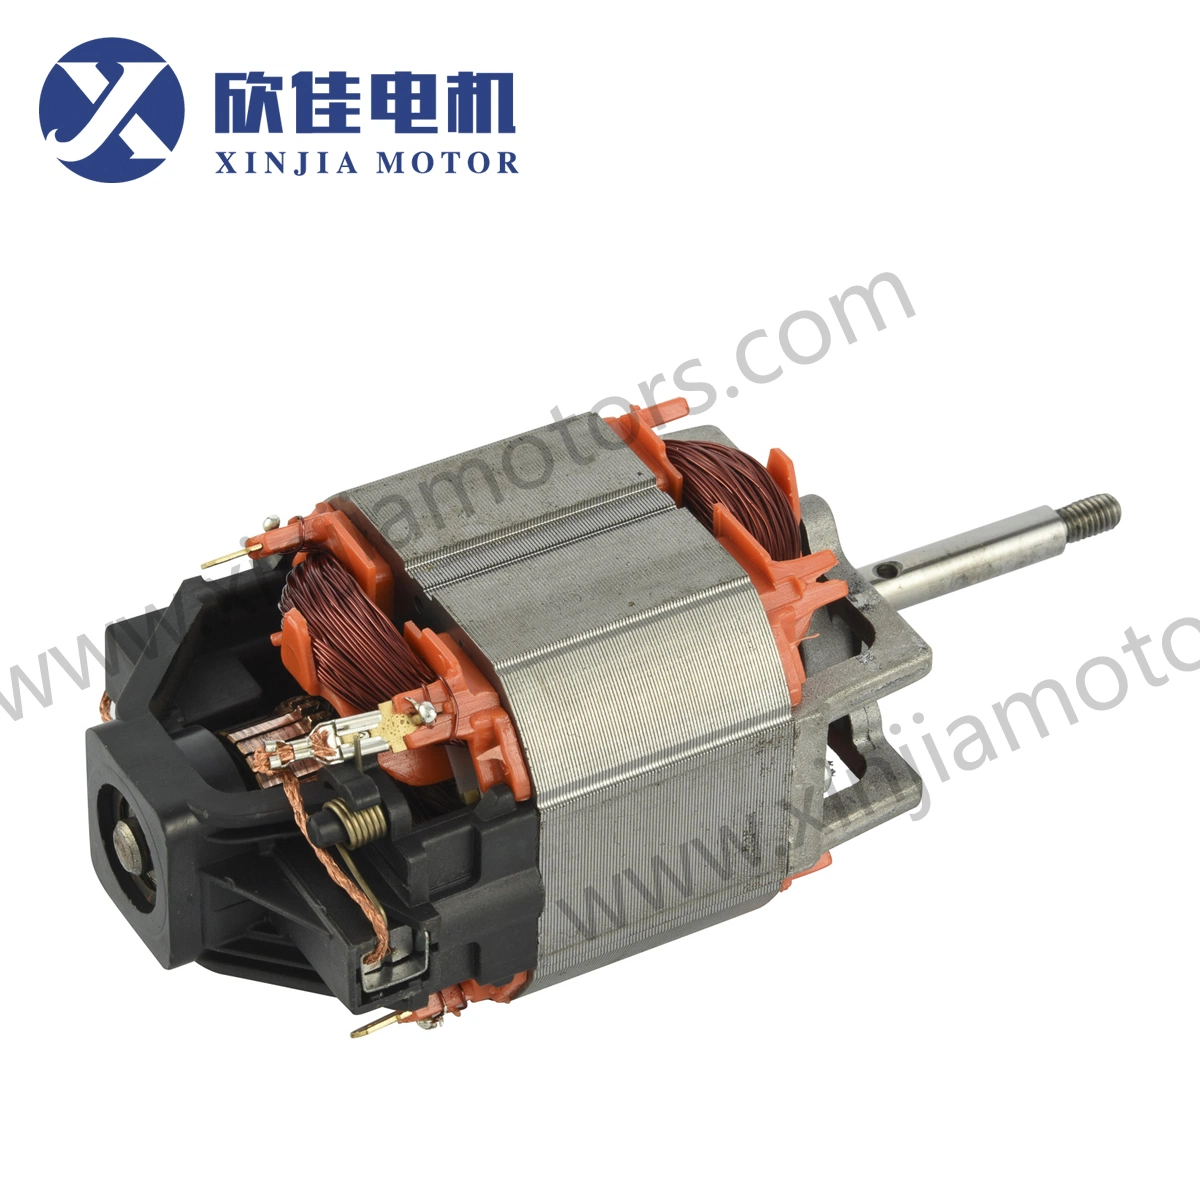 Elektromotor/Motor 127V 220V Elektromotor/AC-Motor/Universalmotor 7630/7630L mit Aluminium-Halterung für String Trimmer/Weeder